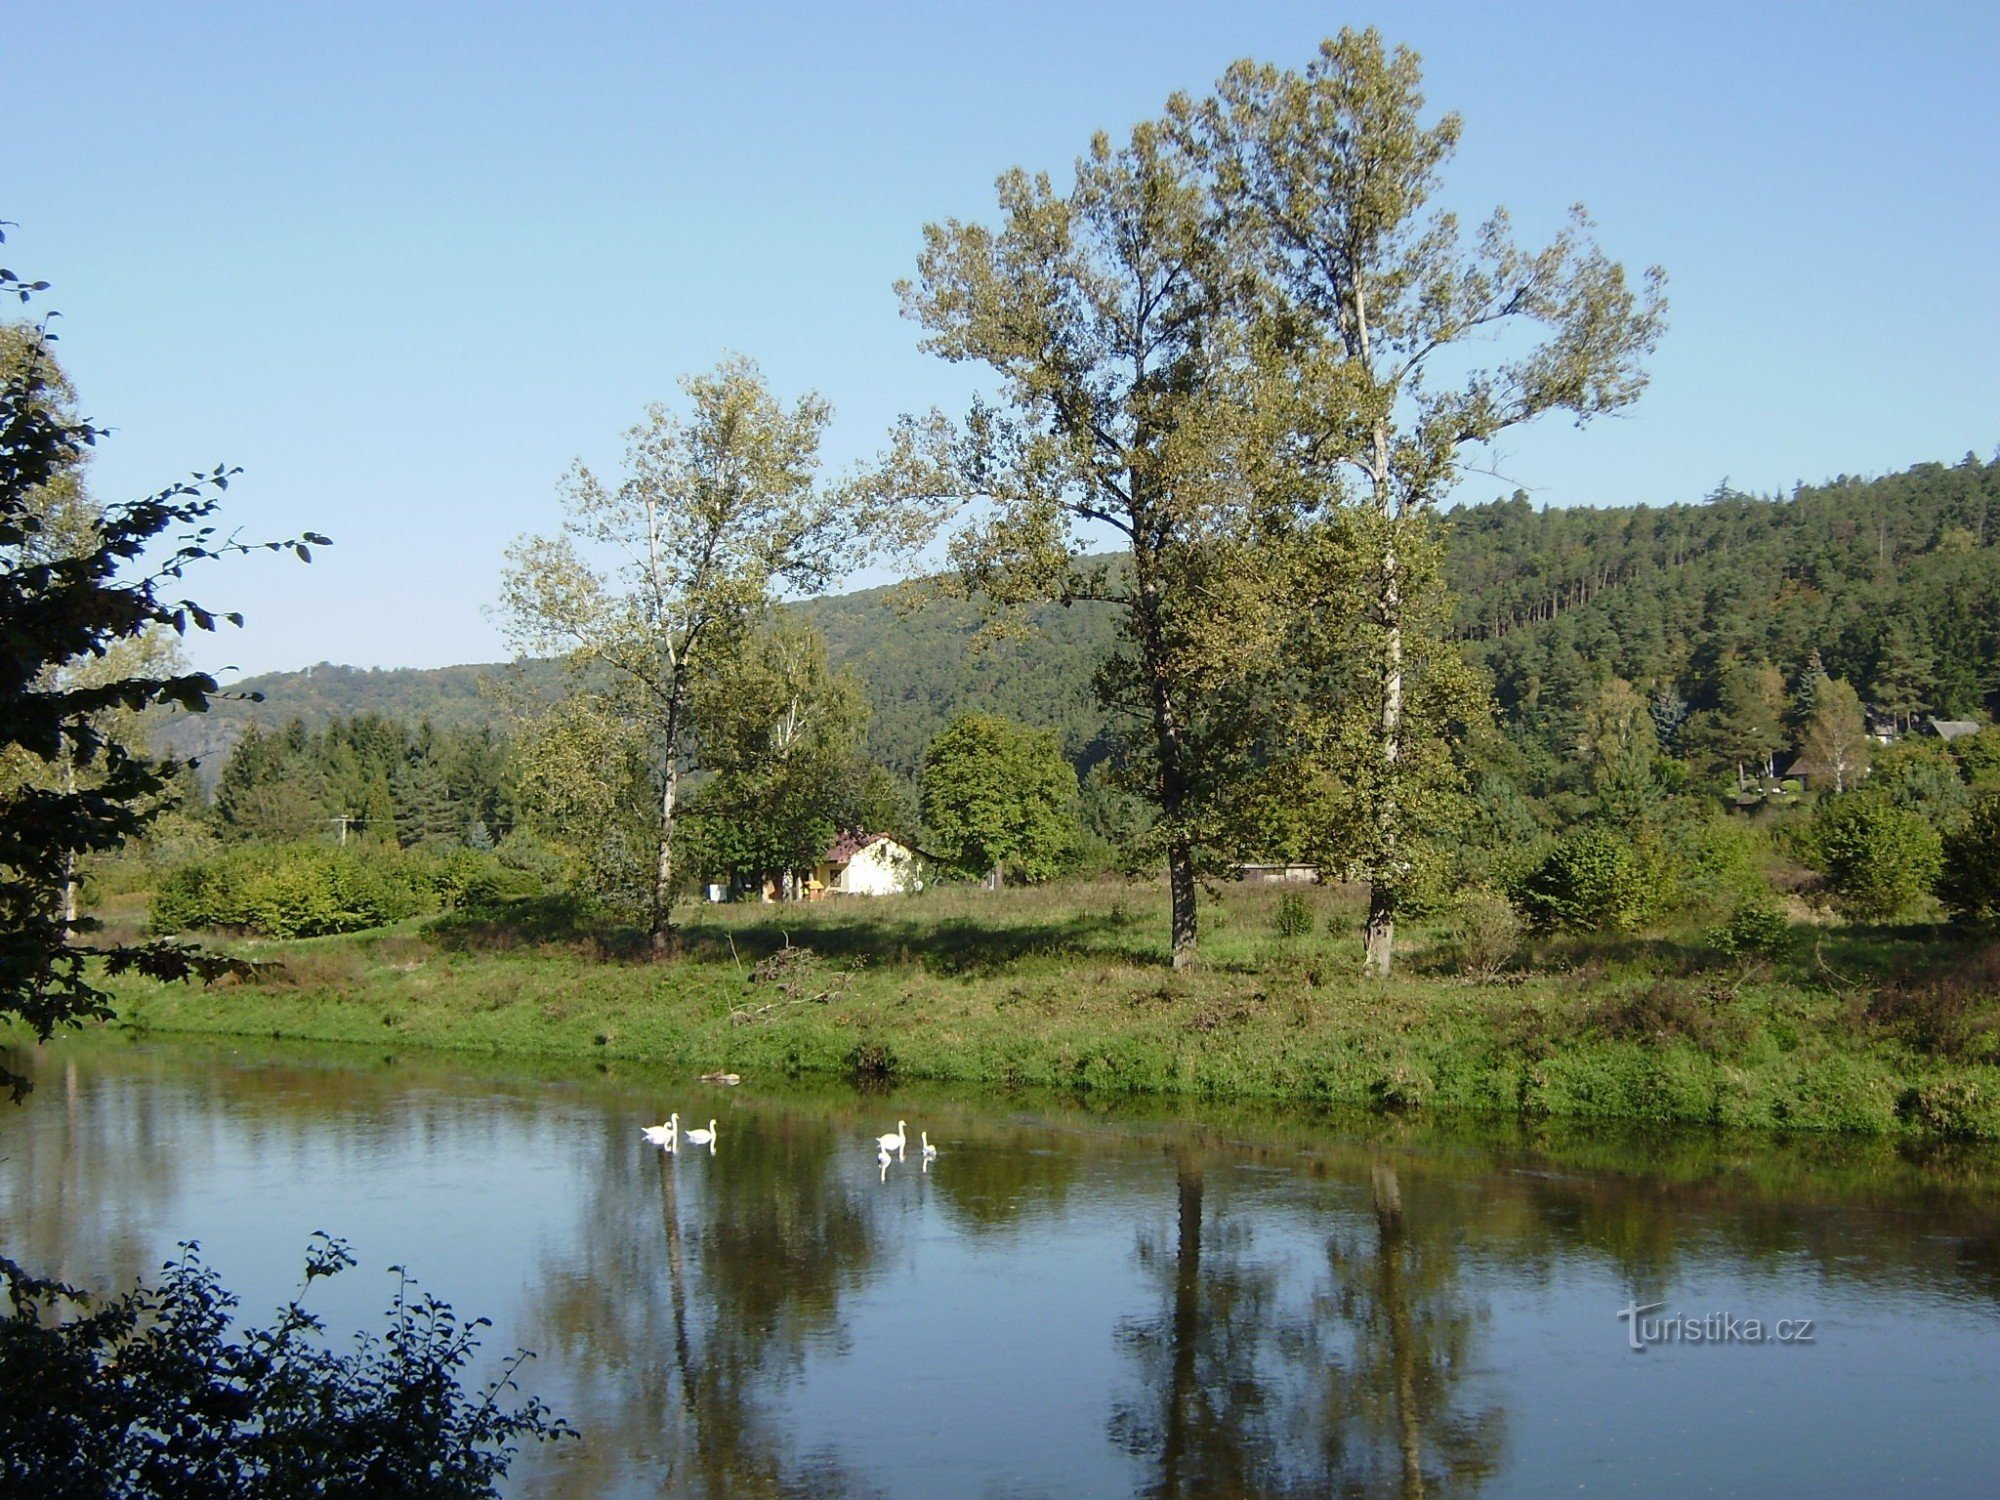 Svanar på Berounce mellan Nižbor och Žloukovice